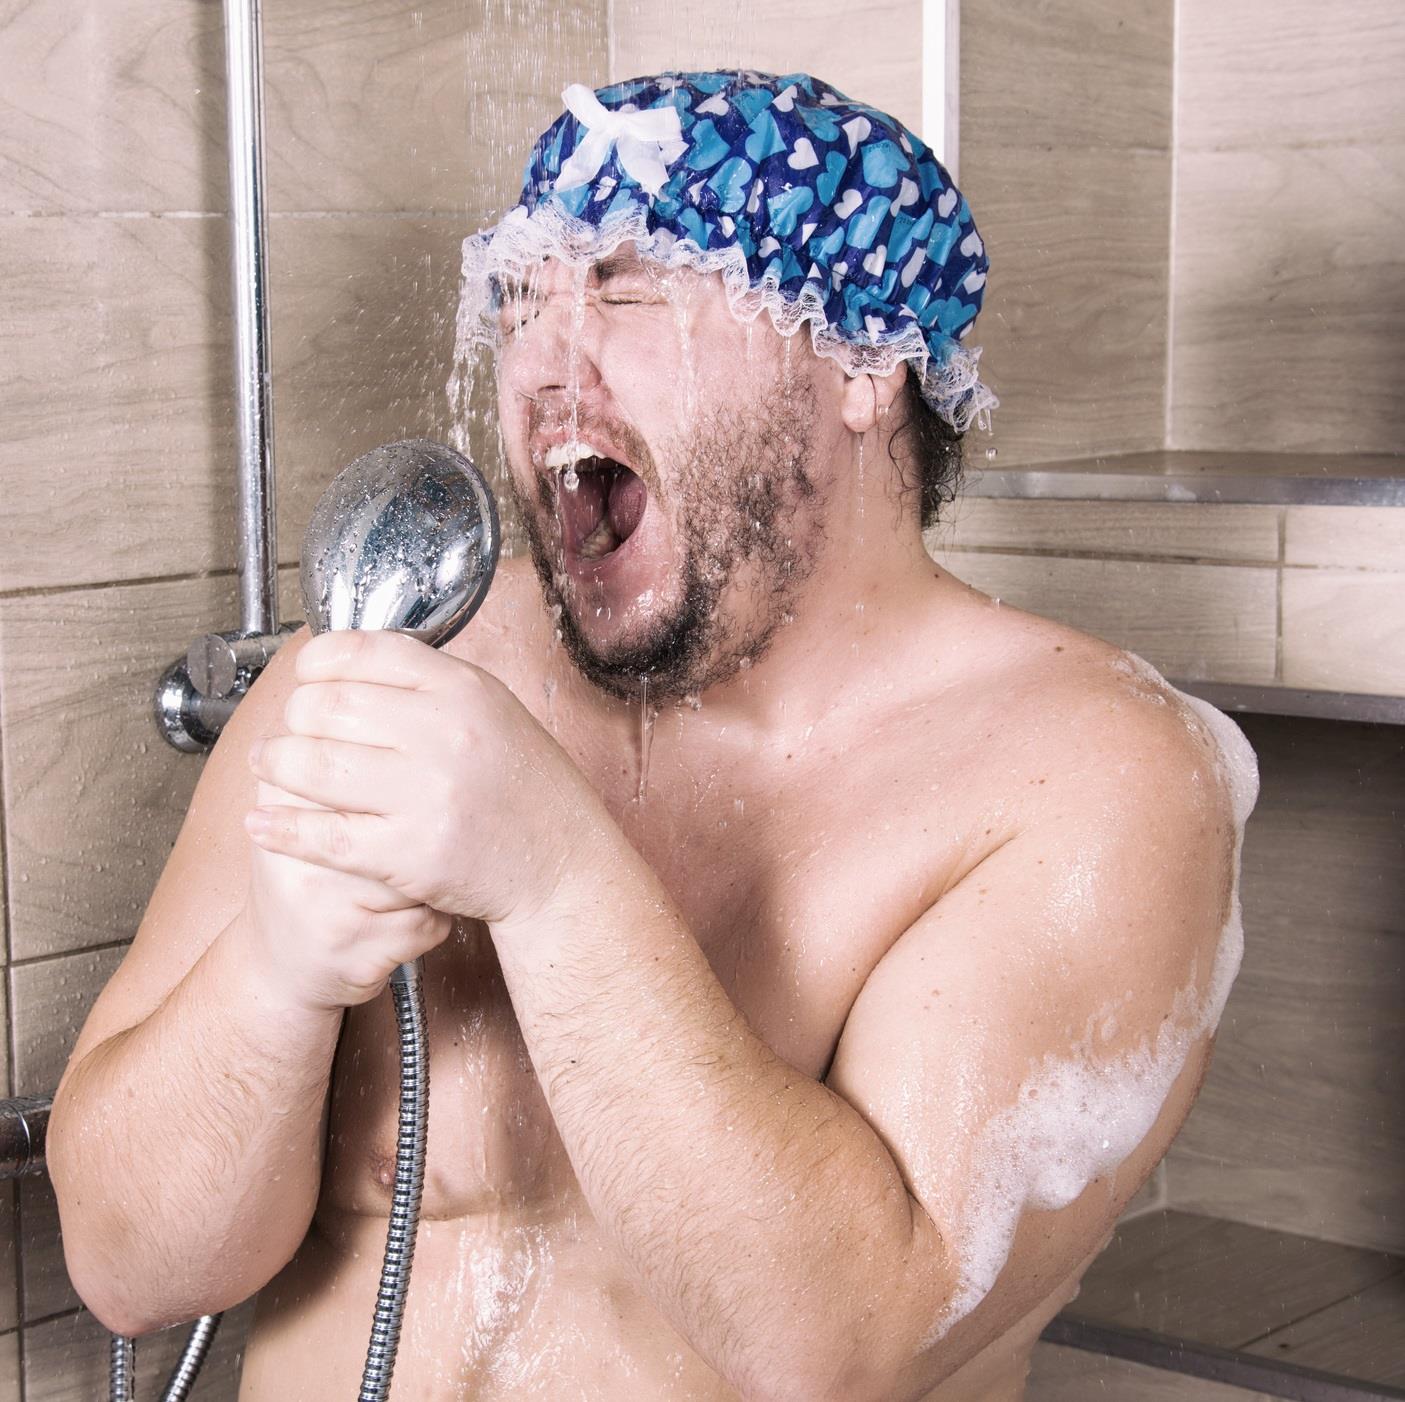 mand synger i brusebadet